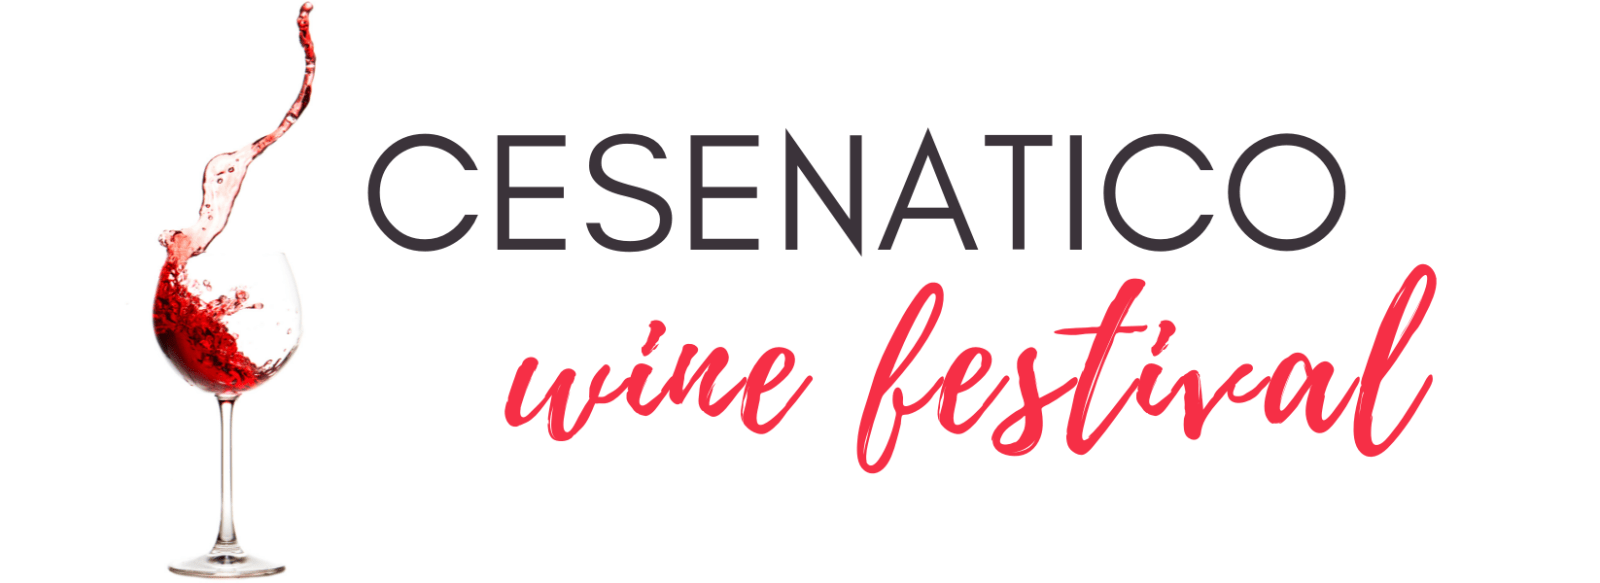 Cesenatico wine festival